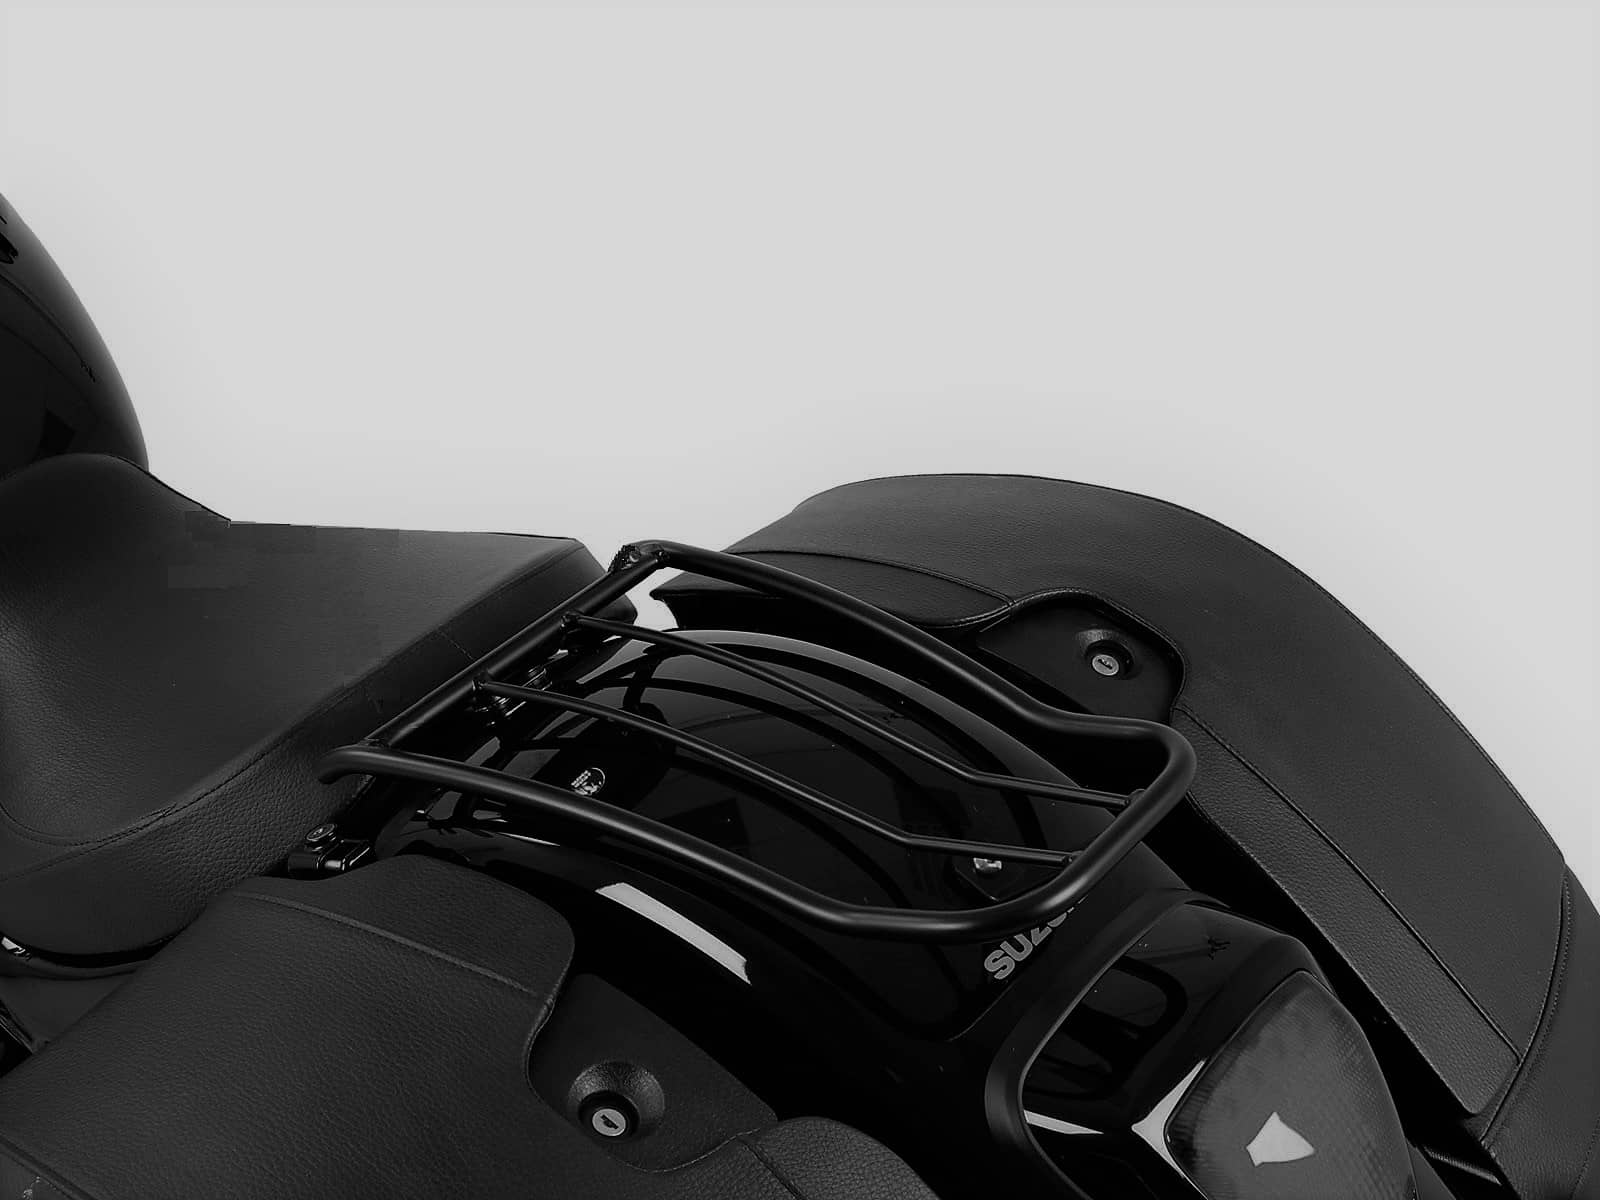 Solorack ohne Rückenlehne schwarz für Suzuki C1500T Intruder (2013-2016)